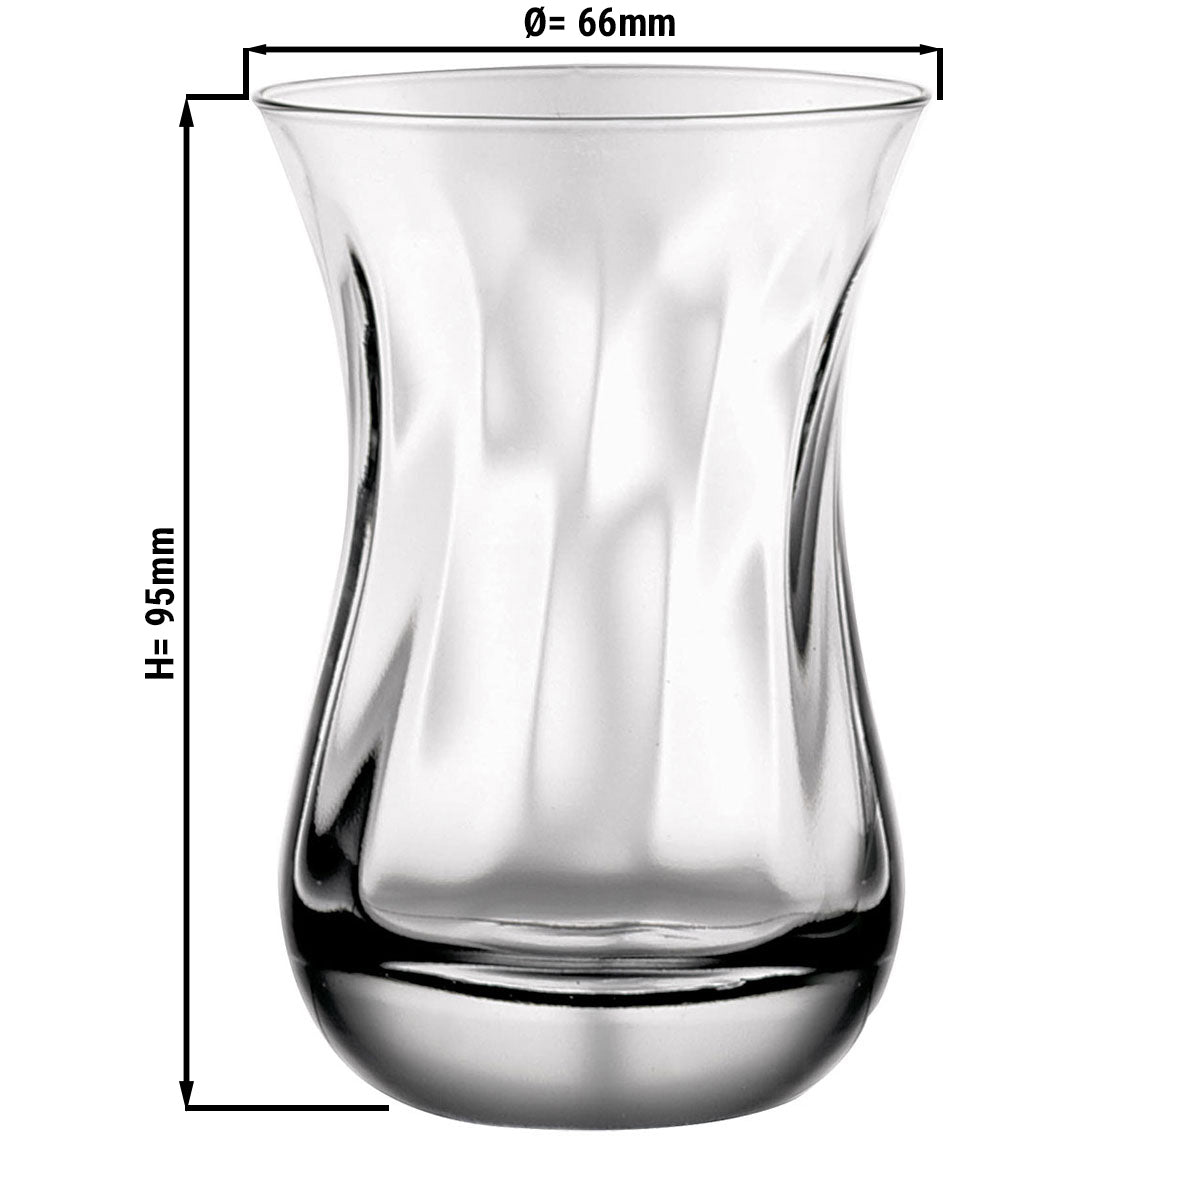 IZMIR teglas med struktur - 0,16 liter - sæt med 6 stk.